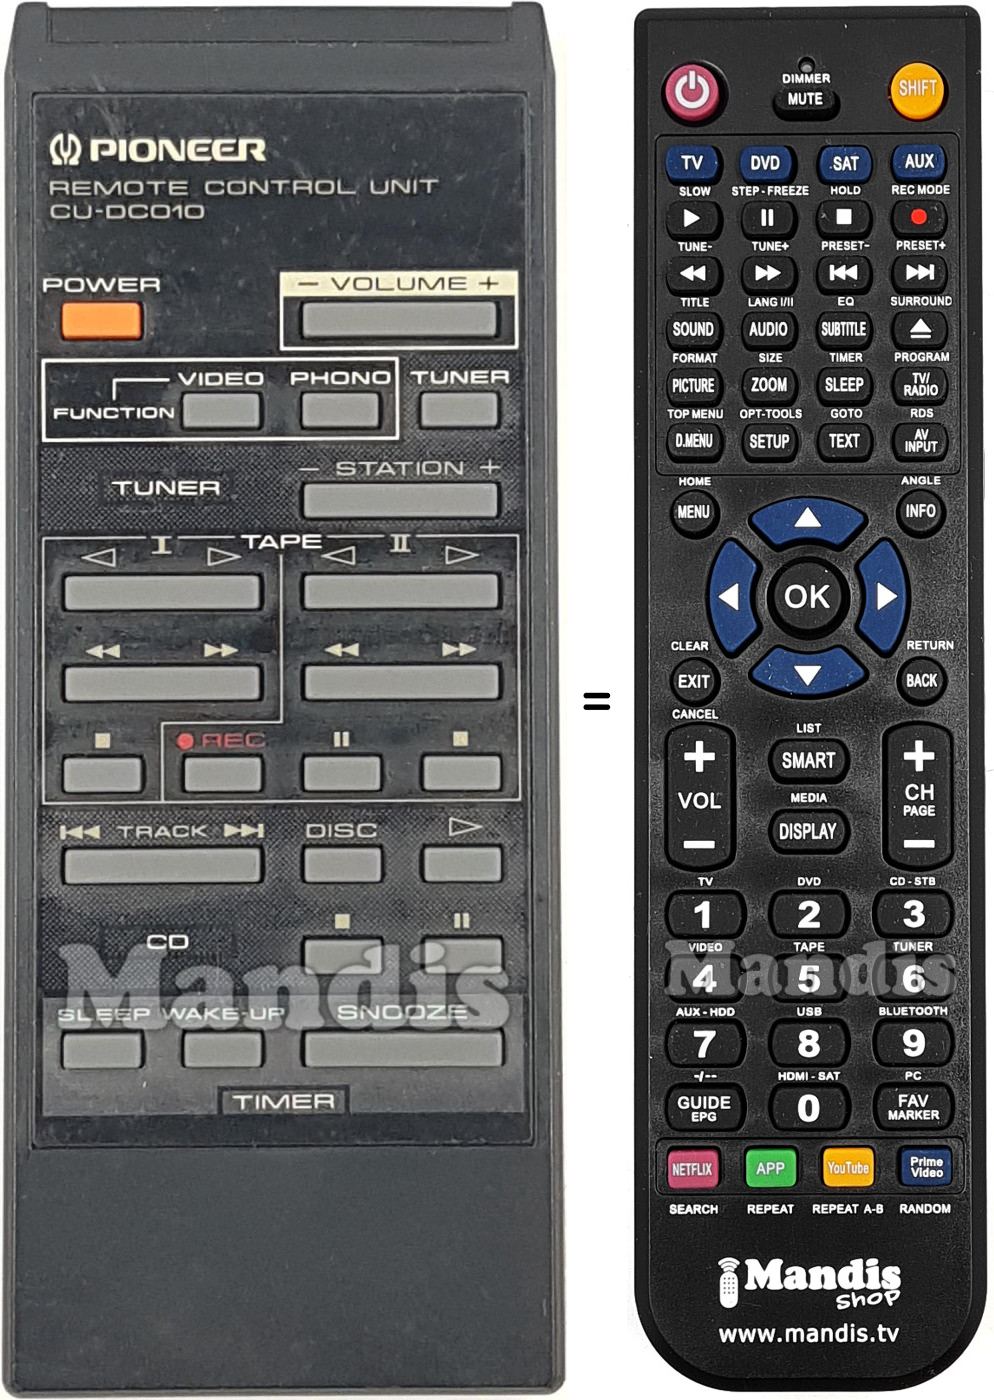 Replacement remote control CU-DC010